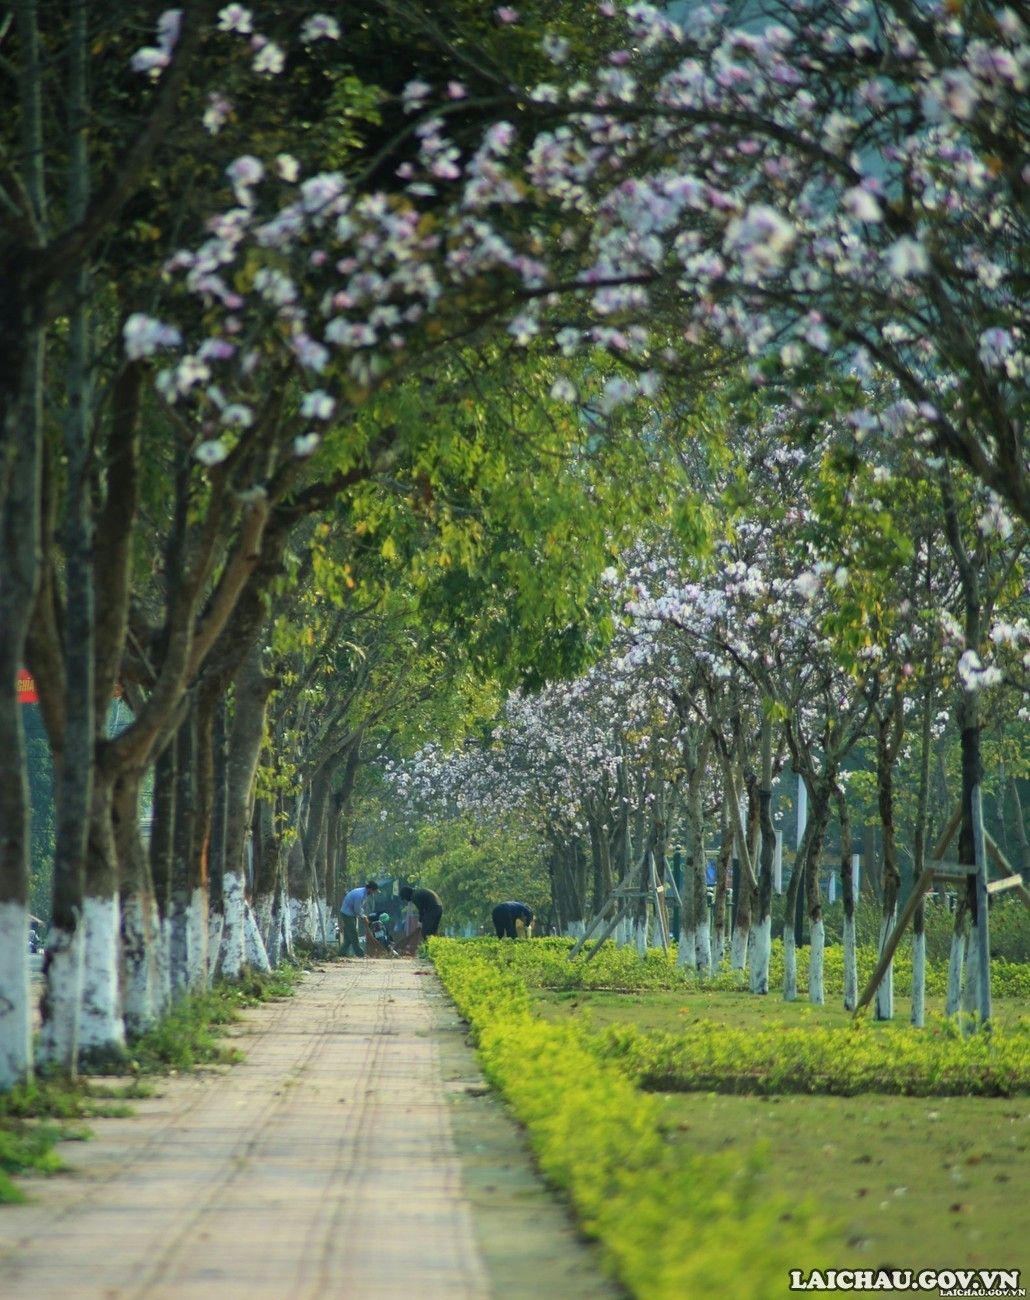 Ở Lai Châu, hoa ban được trồng tại nhiều tuyến phố, công viên, nơi công cộng.